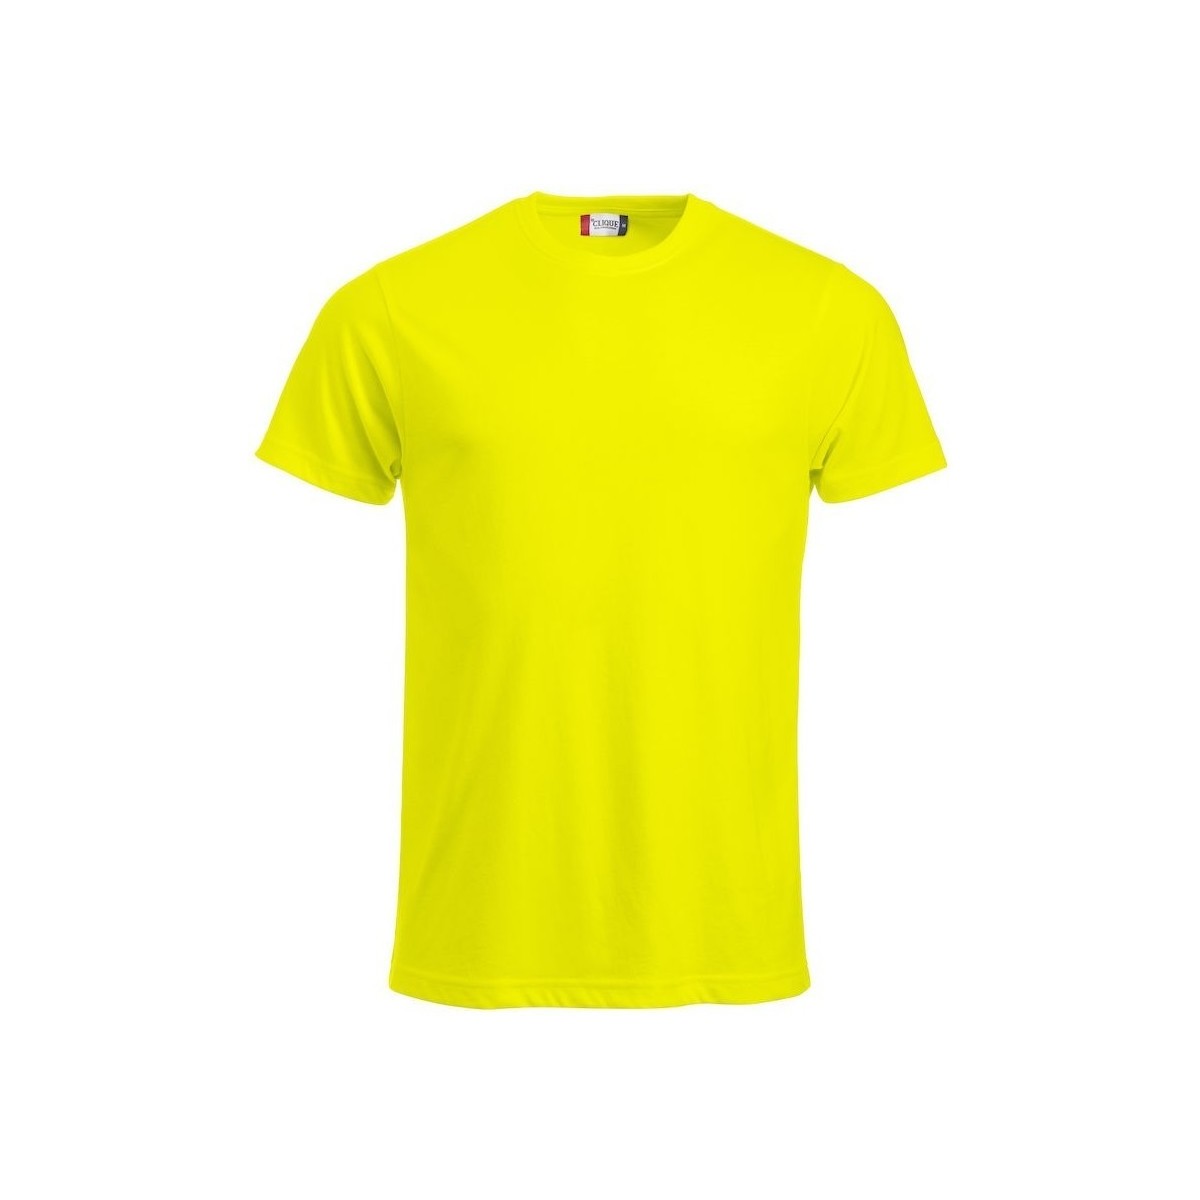 Vêtements Homme T-shirts manches longues C-Clique Classic Multicolore